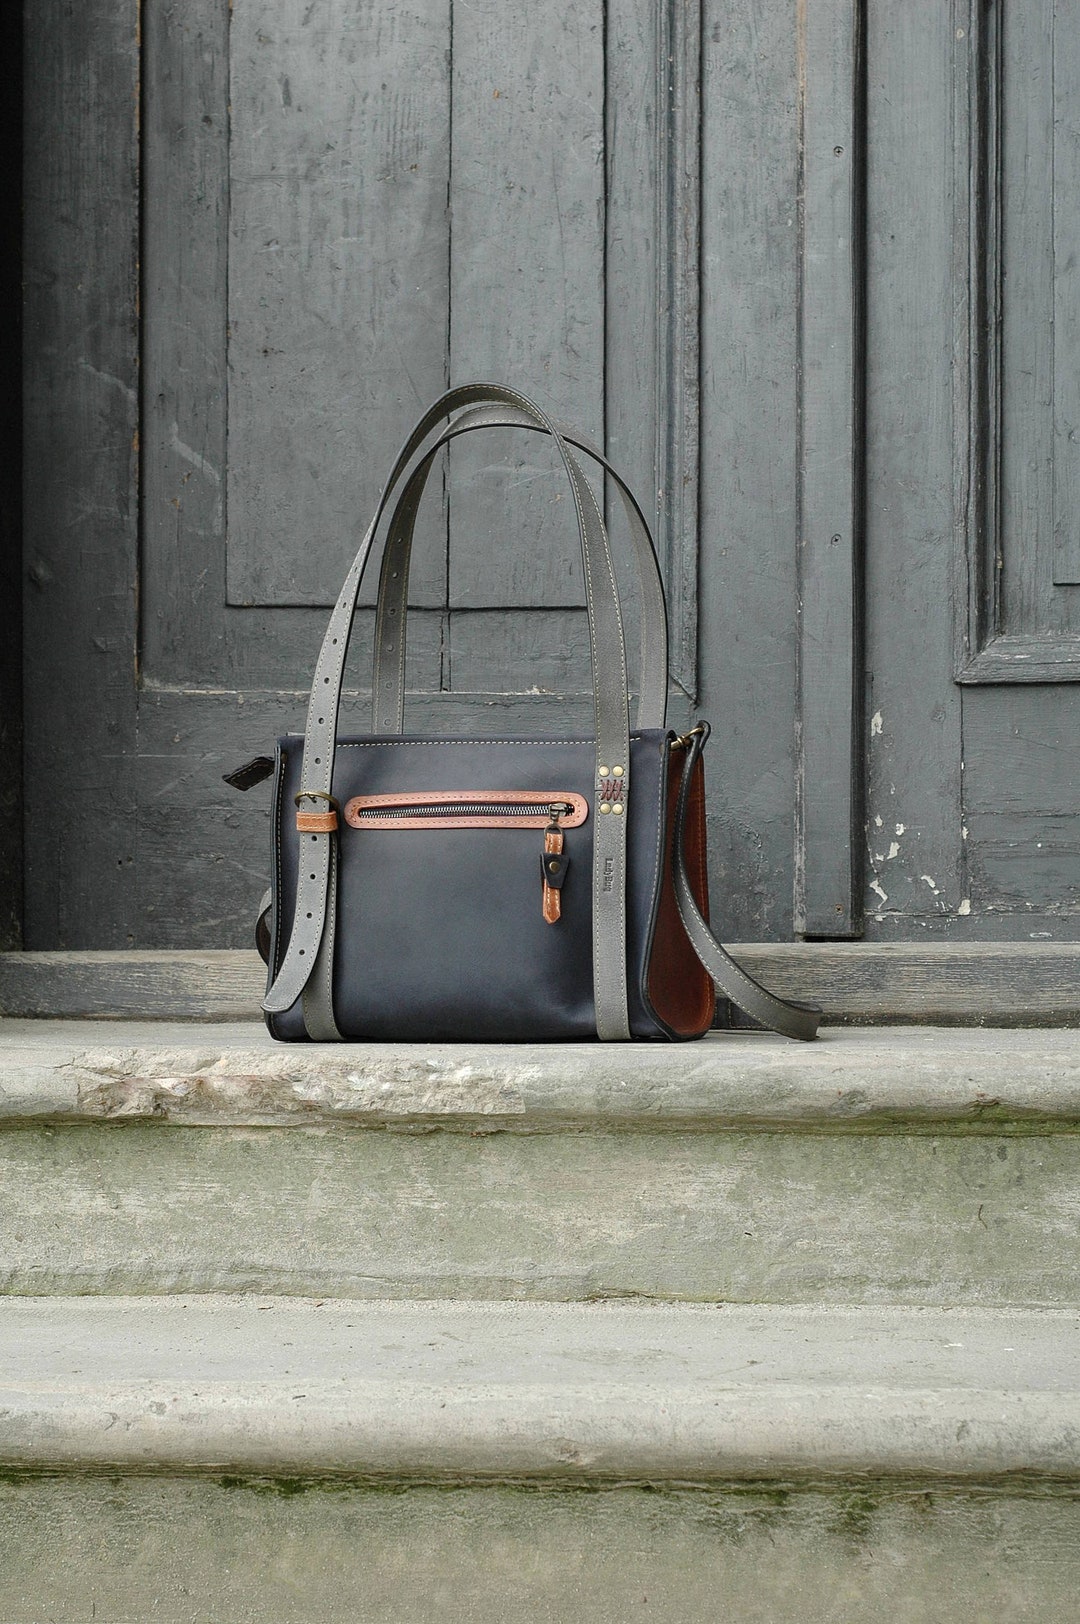 Original Purse Leather Bag Shoulder Handbag Ladybuq Navy Blue - Etsy